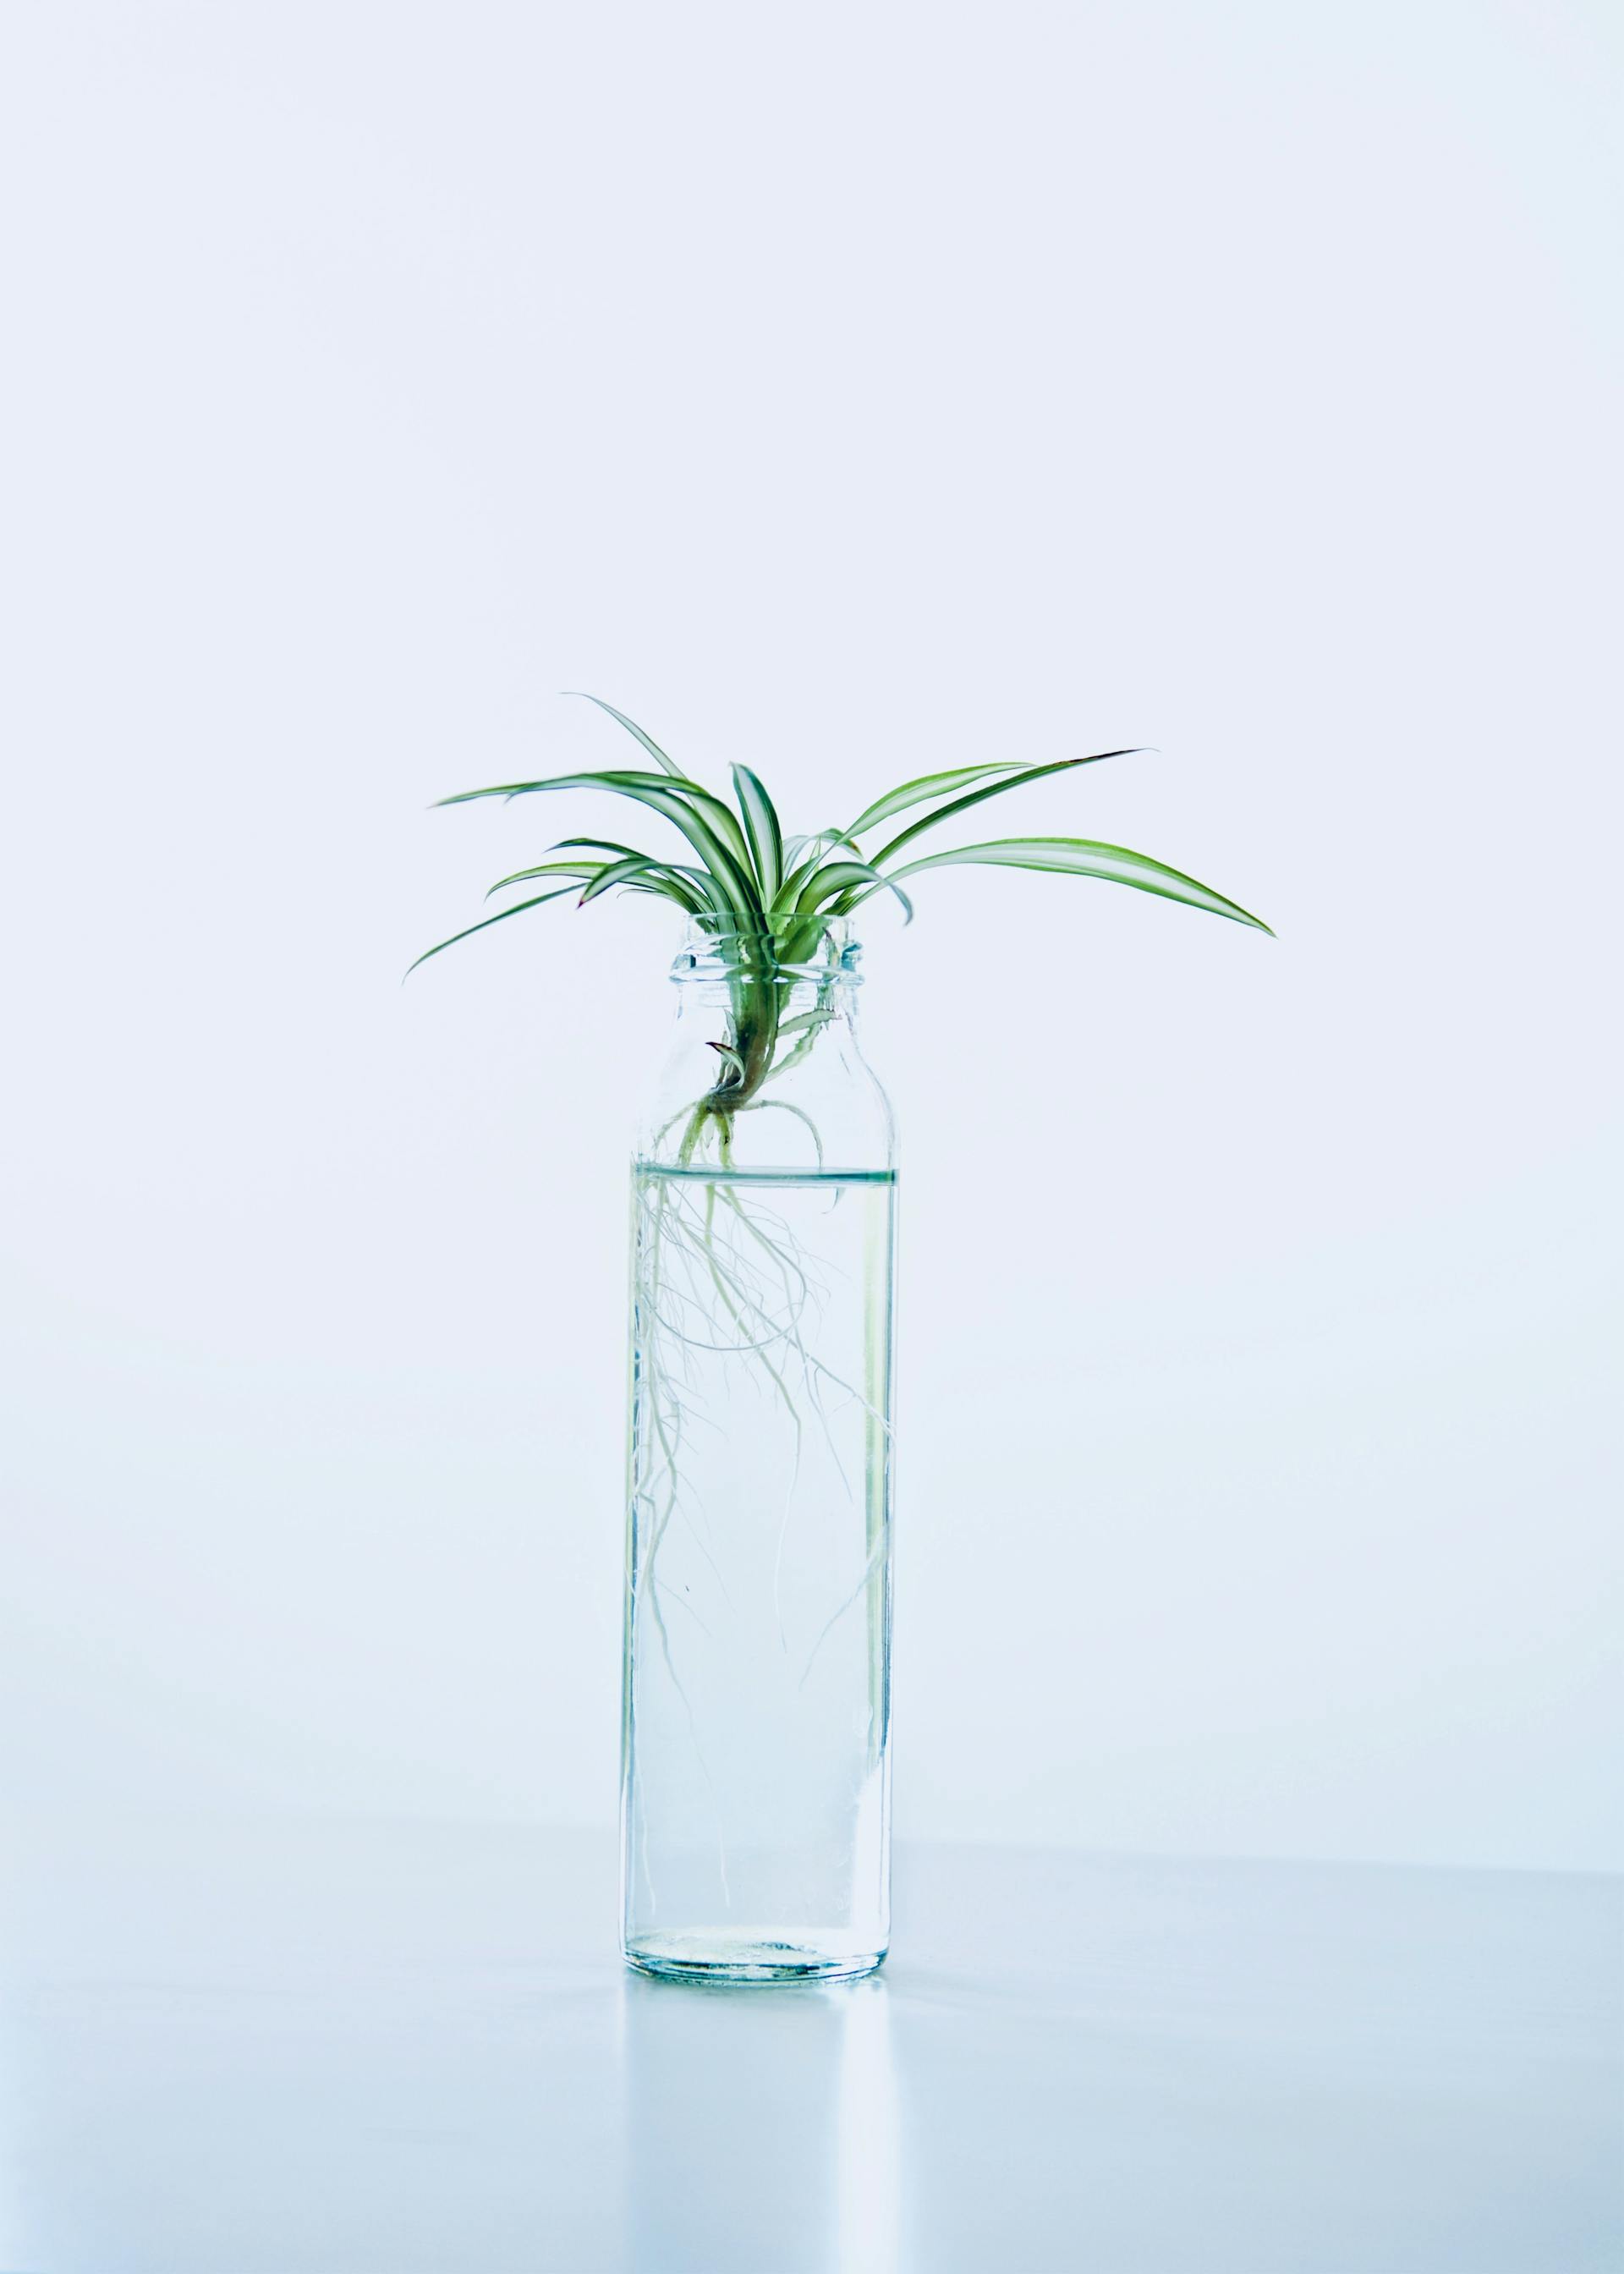 Una planta verde en una botella de cristal con agua | Foto: Pexels